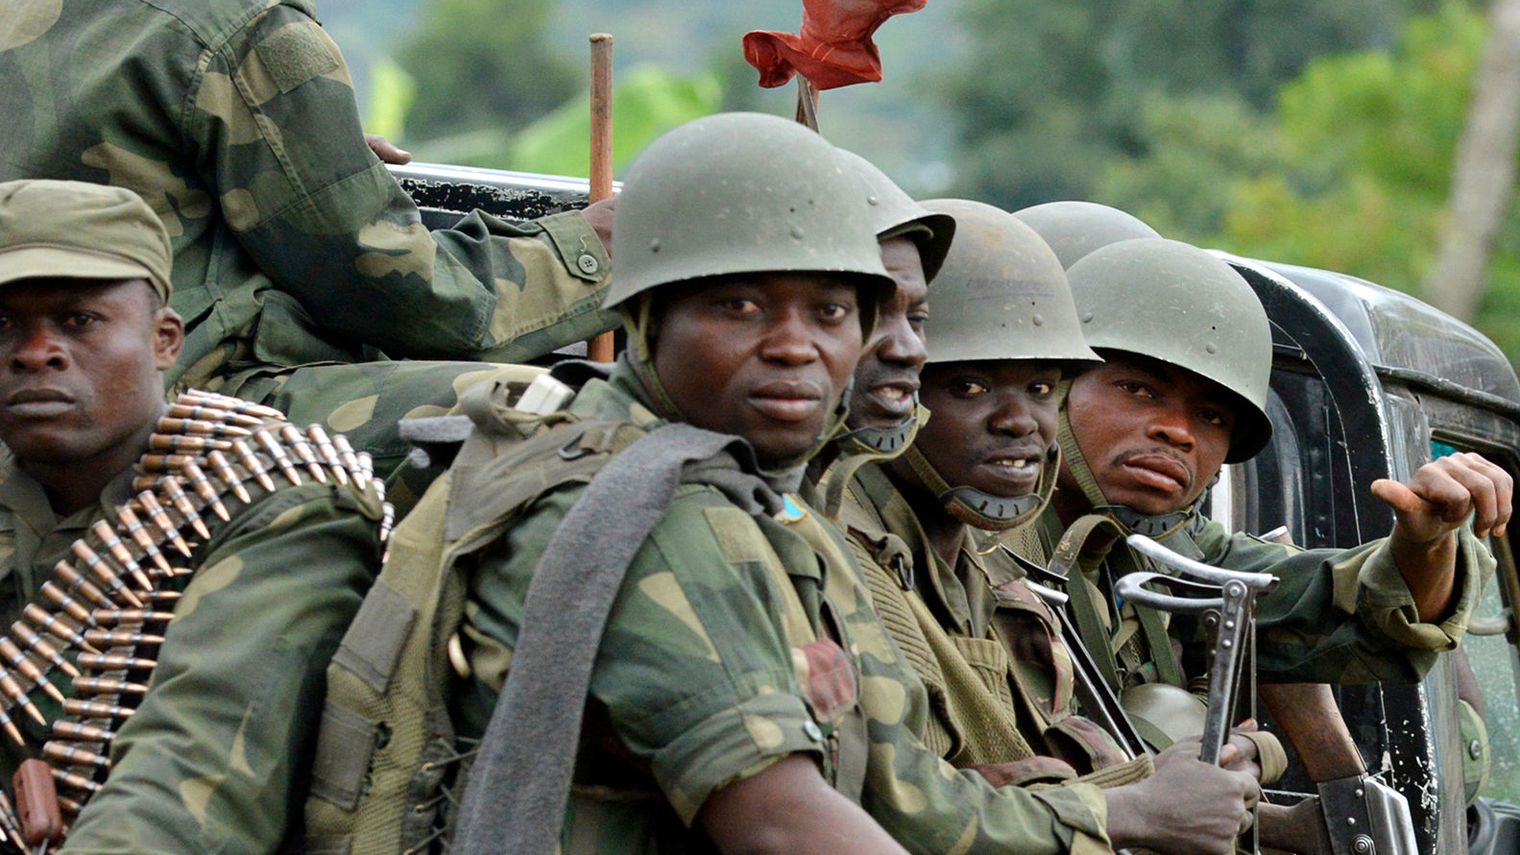 Des soldats congolais poursuivent leur offensive contre les rebelles du m23 le 4 novembre 2013 pres de rutshuru dans l est de